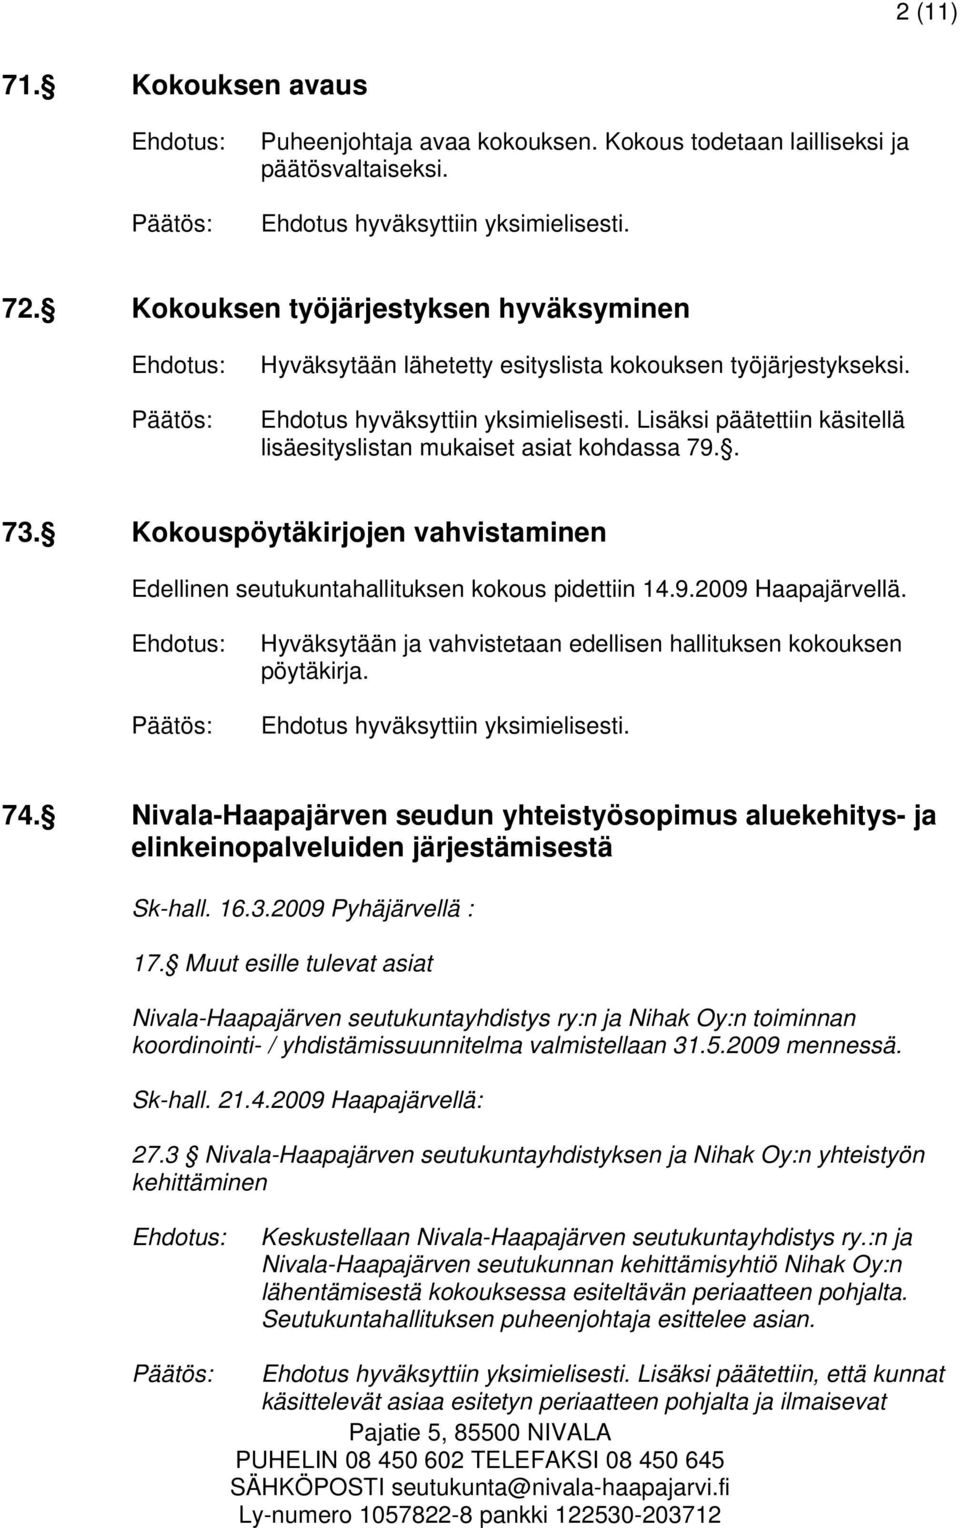 Kokouspöytäkirjojen vahvistaminen Edellinen seutukuntahallituksen kokous pidettiin 14.9.2009 Haapajärvellä. Hyväksytään ja vahvistetaan edellisen hallituksen kokouksen pöytäkirja. 74.